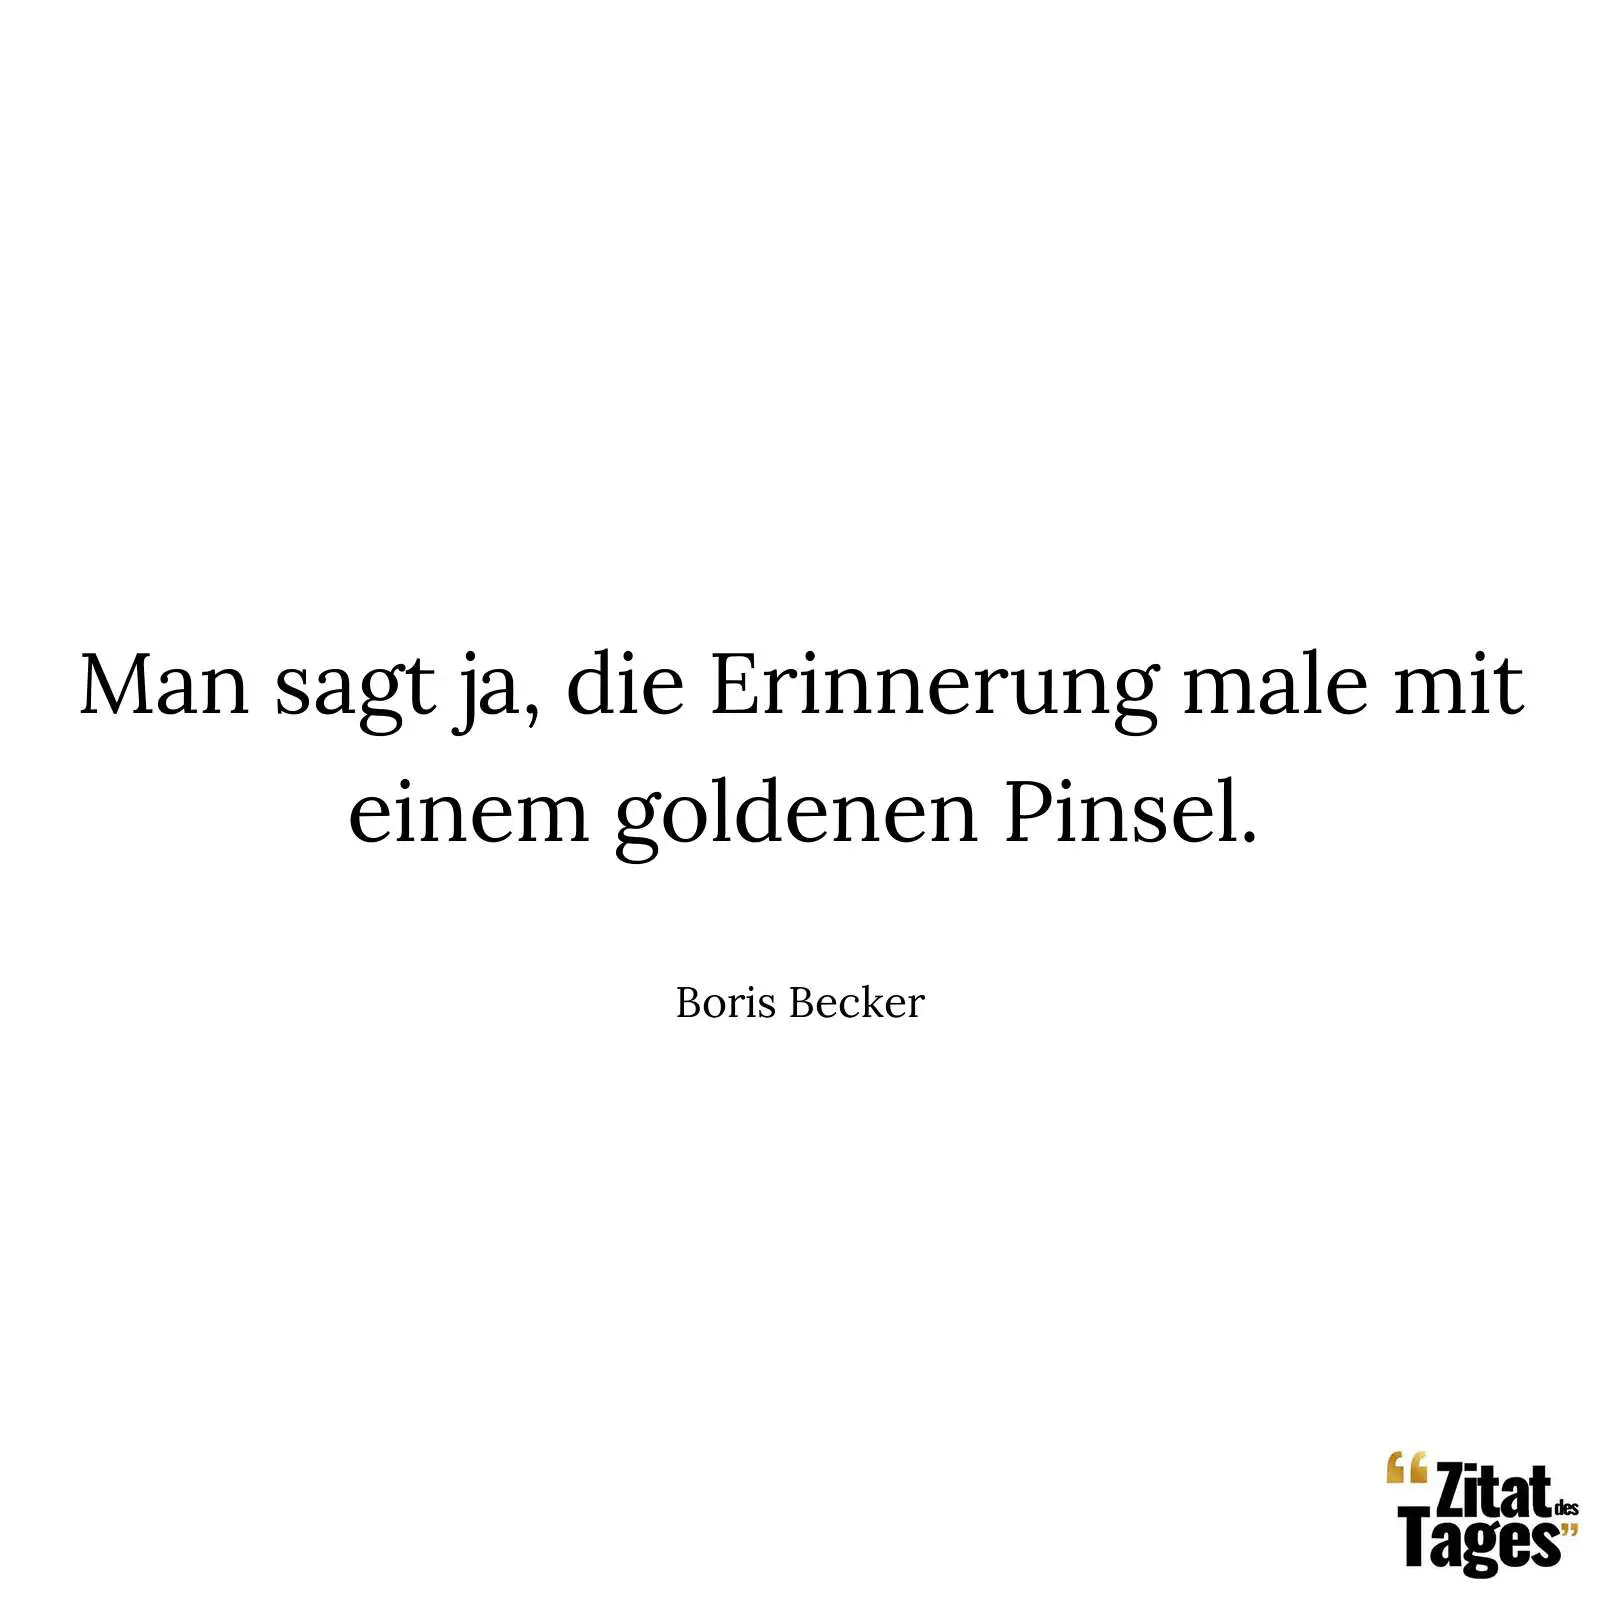 Man sagt ja, die Erinnerung male mit einem goldenen Pinsel. - Boris Becker